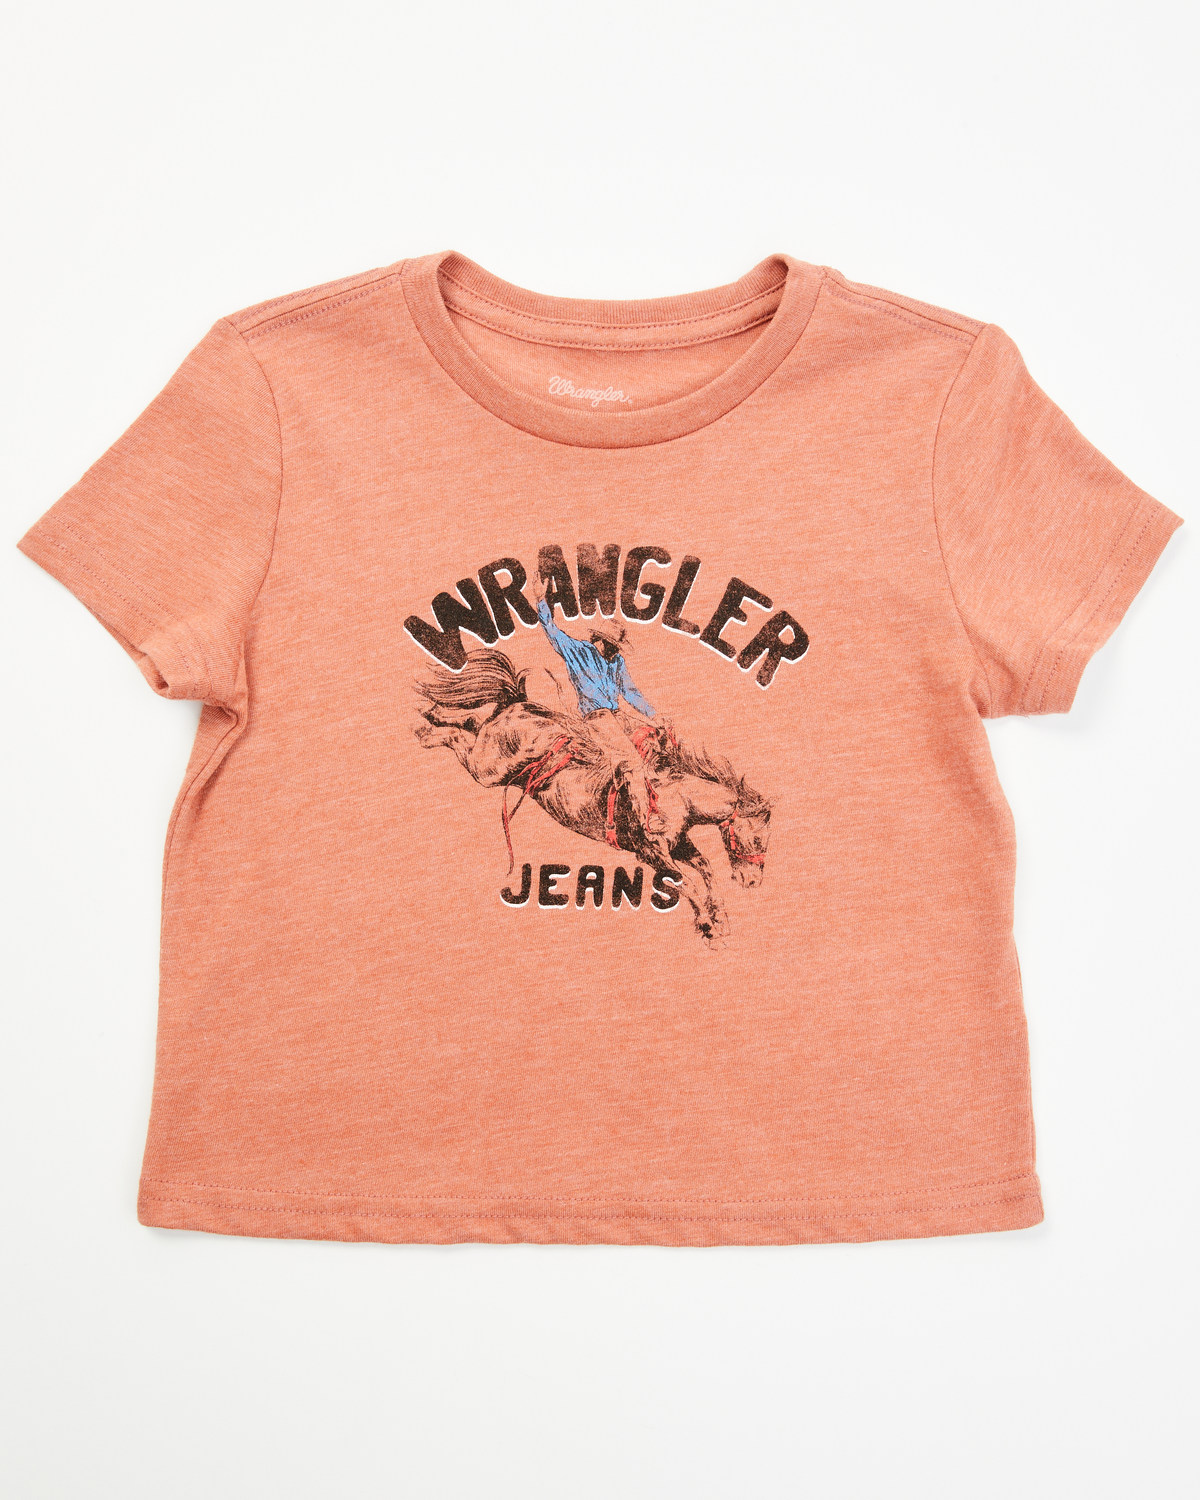 Wrangler Toddler Boys' Bronco Short Sleeve Graphic Print T-Shirt